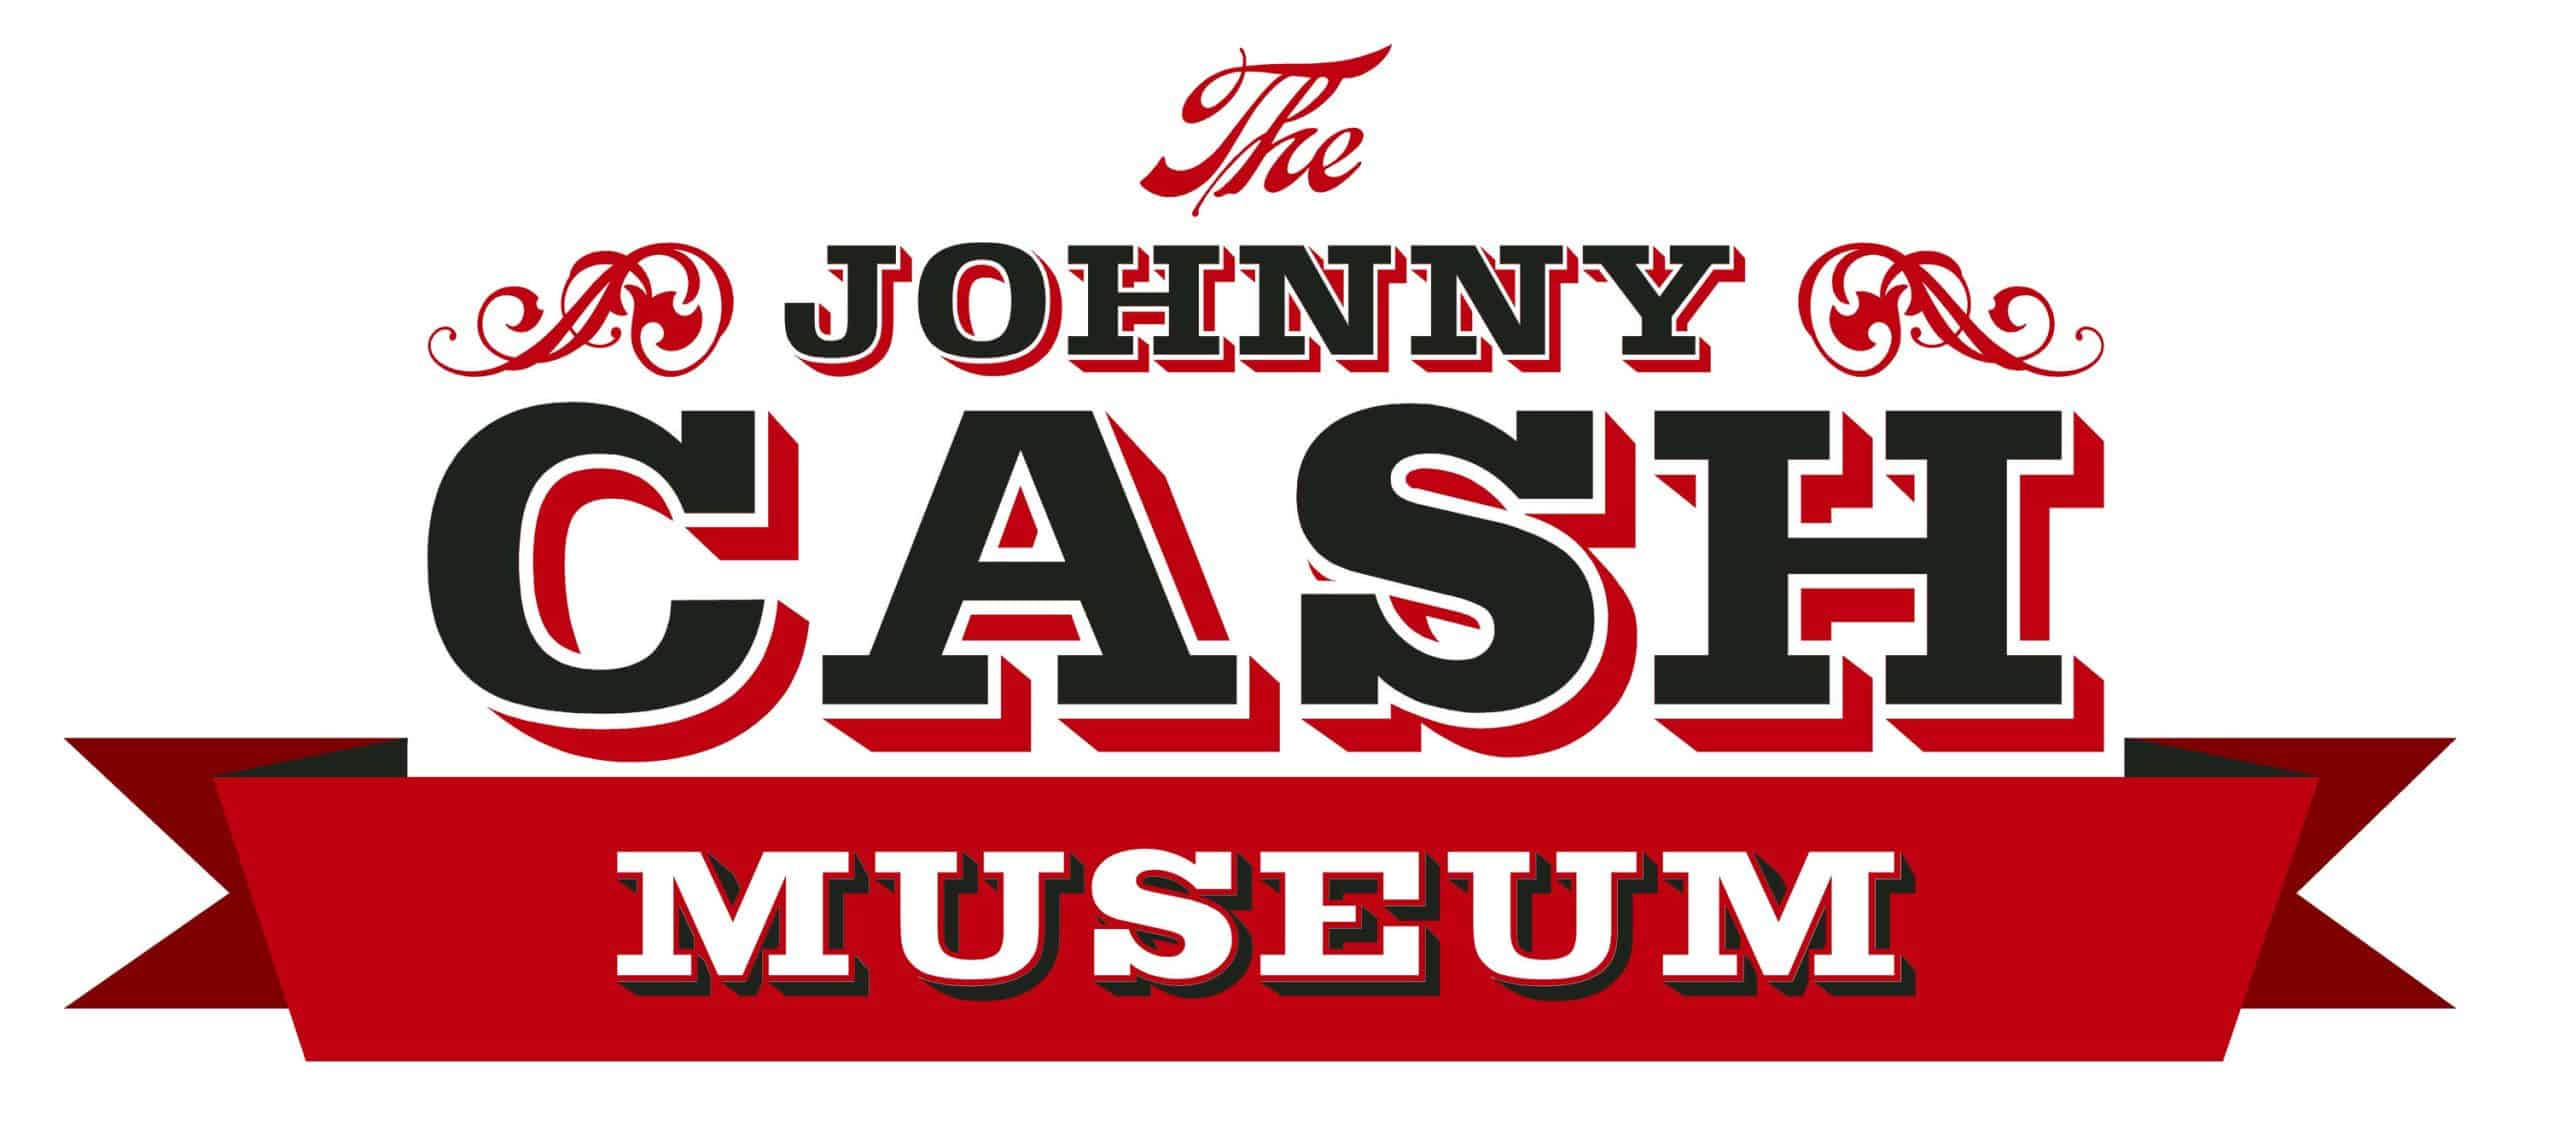 Johnny Cash Museum, Nashville, TN